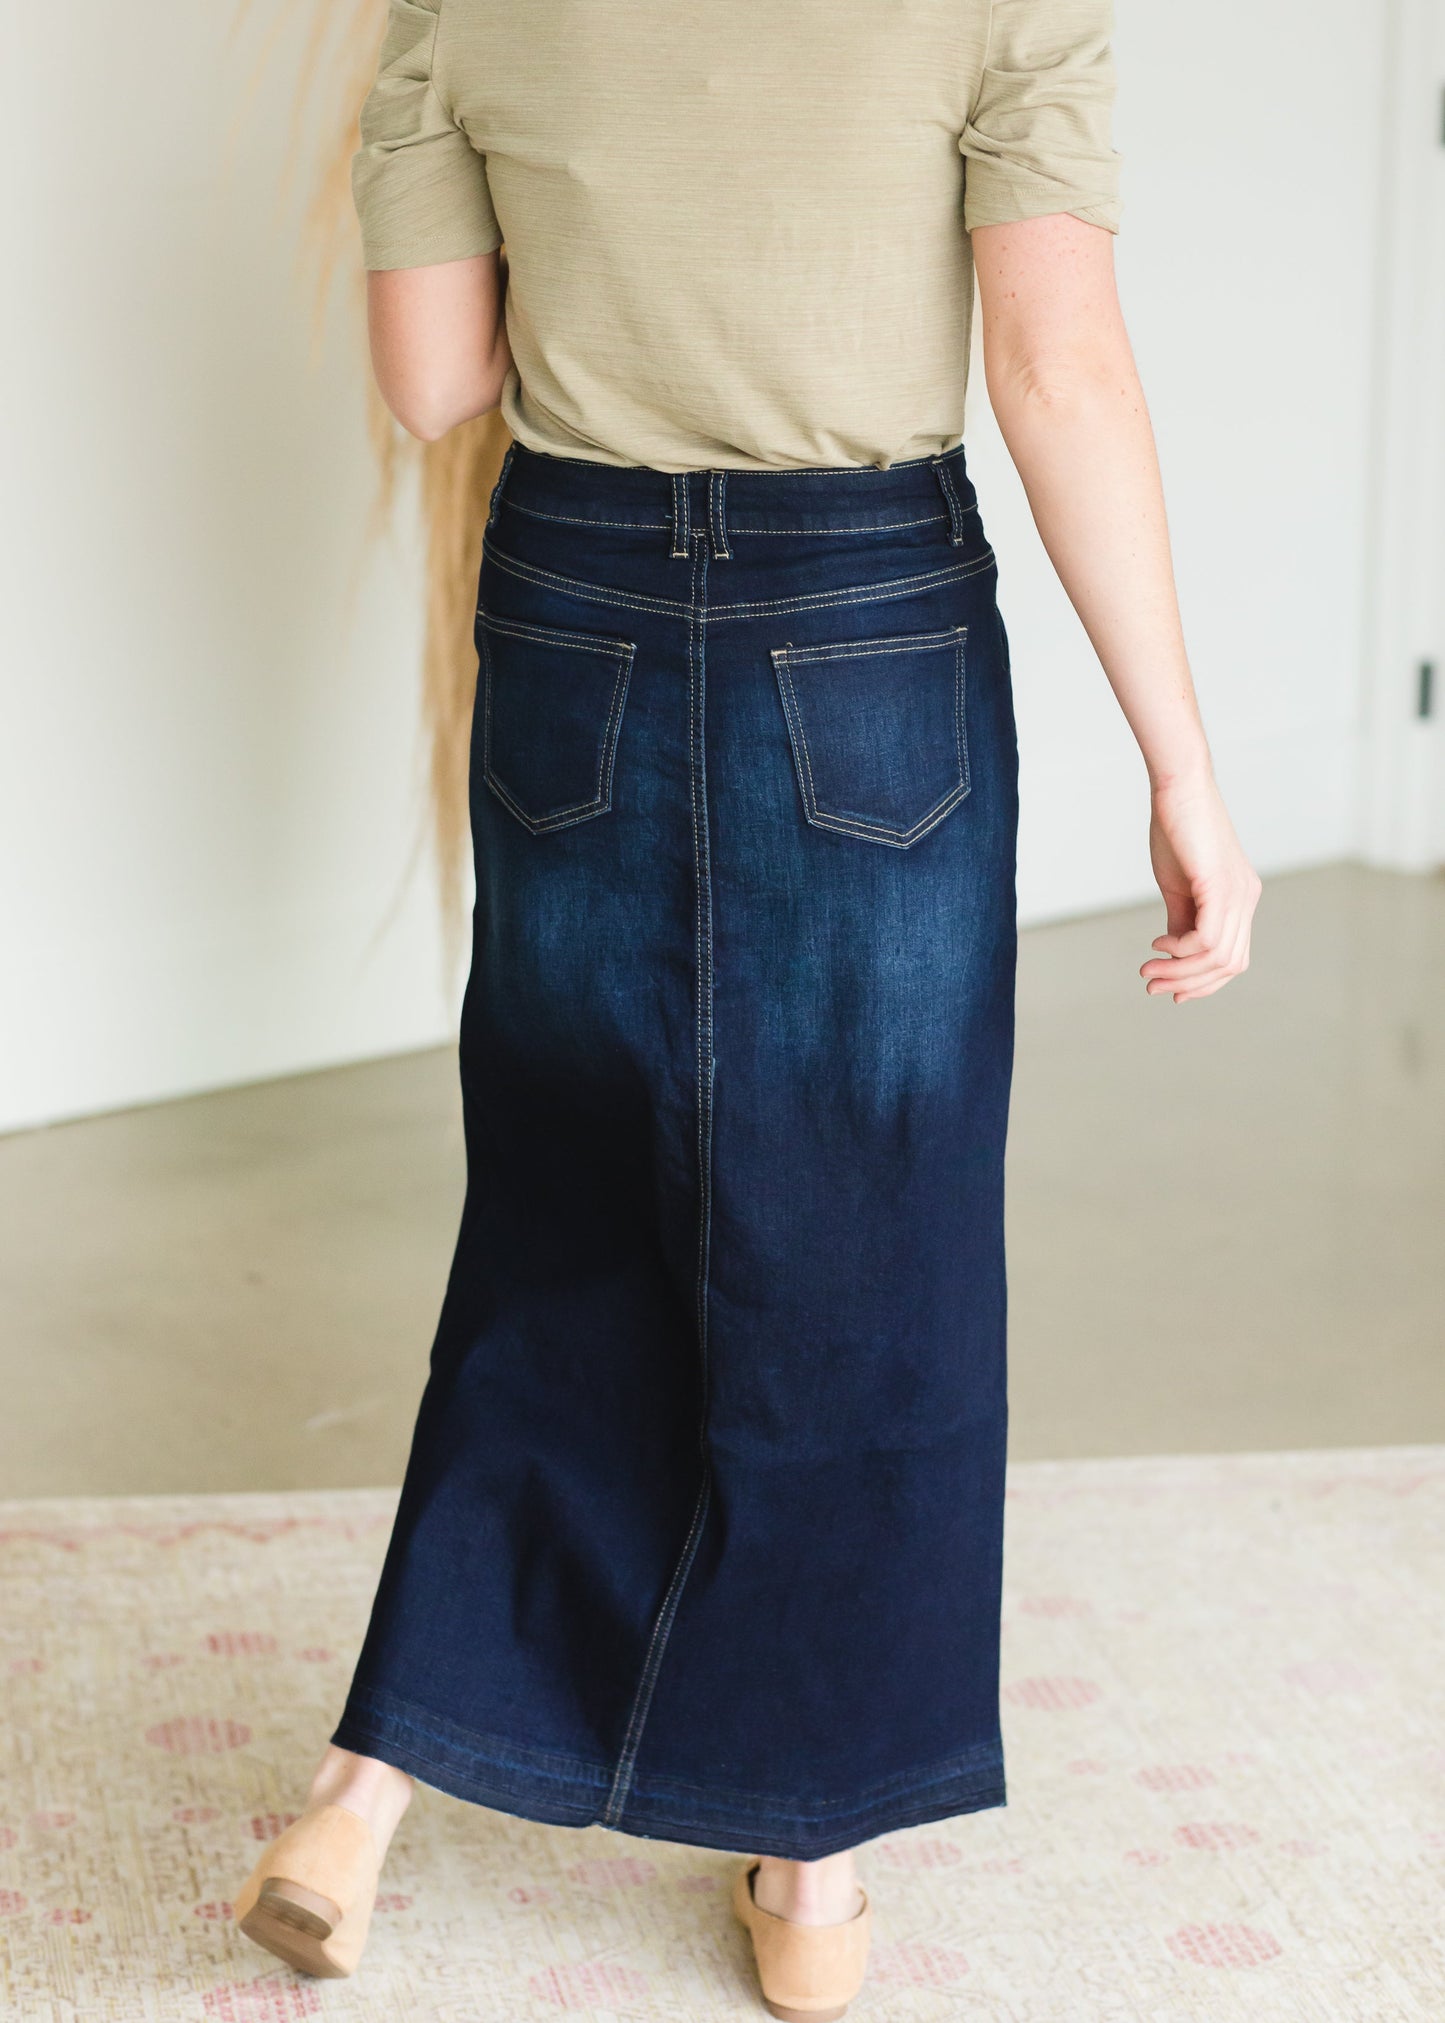 Belted Patch Pocket Long Denim Skirt - FINAL SALE Skirts